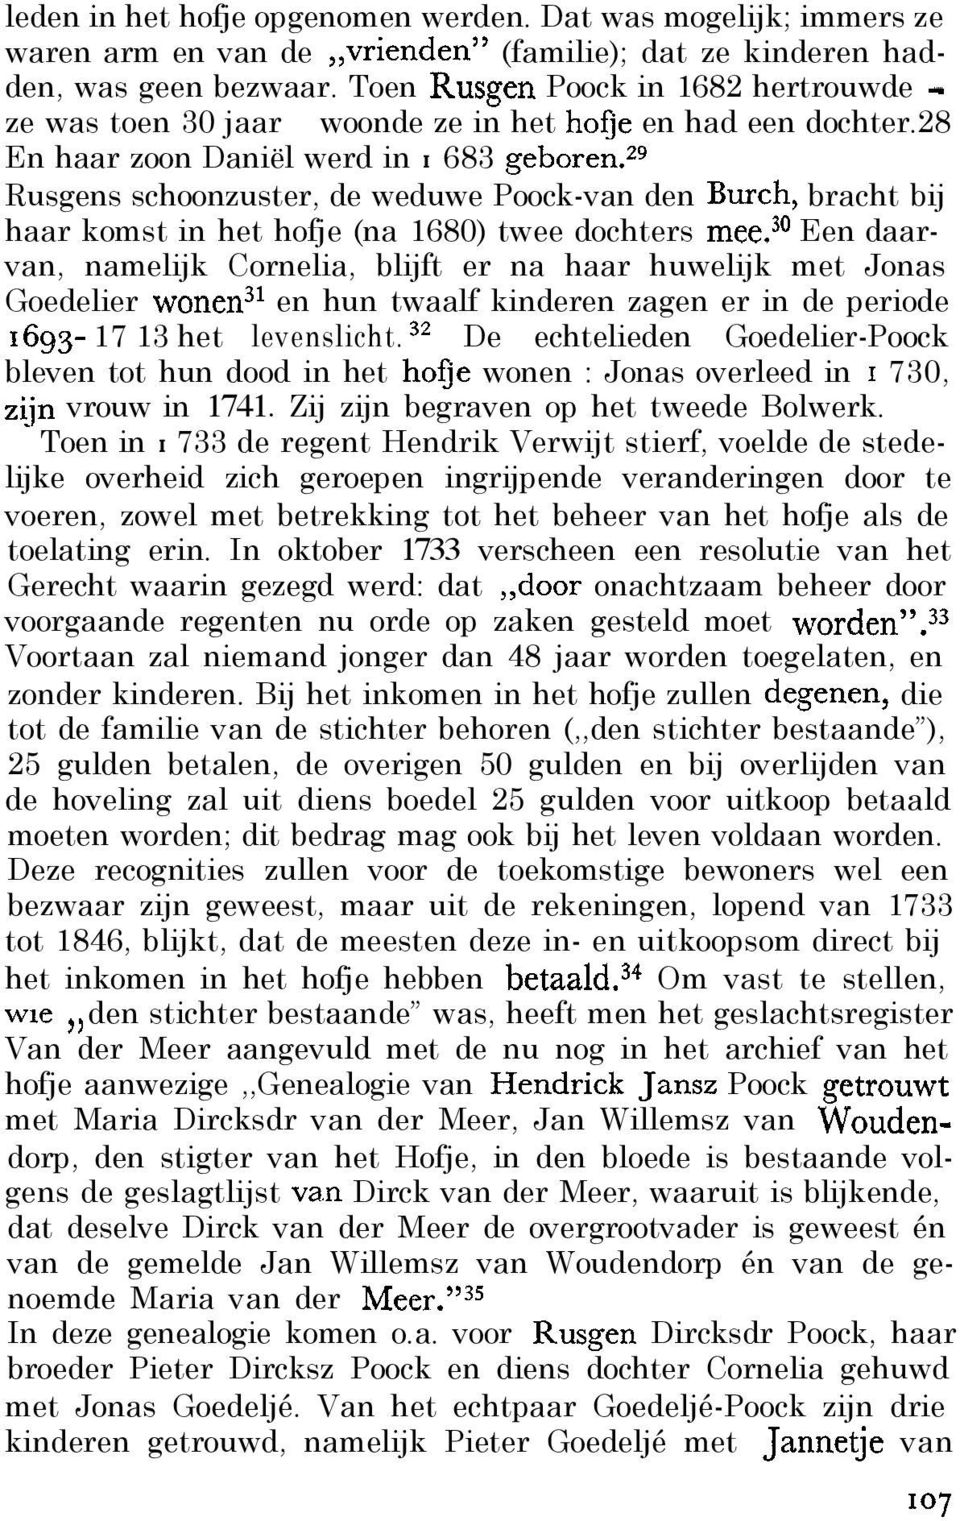 2g Rusgens schoonzuster, de weduwe Poock-van den Burch, bracht bij haar komst in het hofje (na 1680) twee dochters mee.